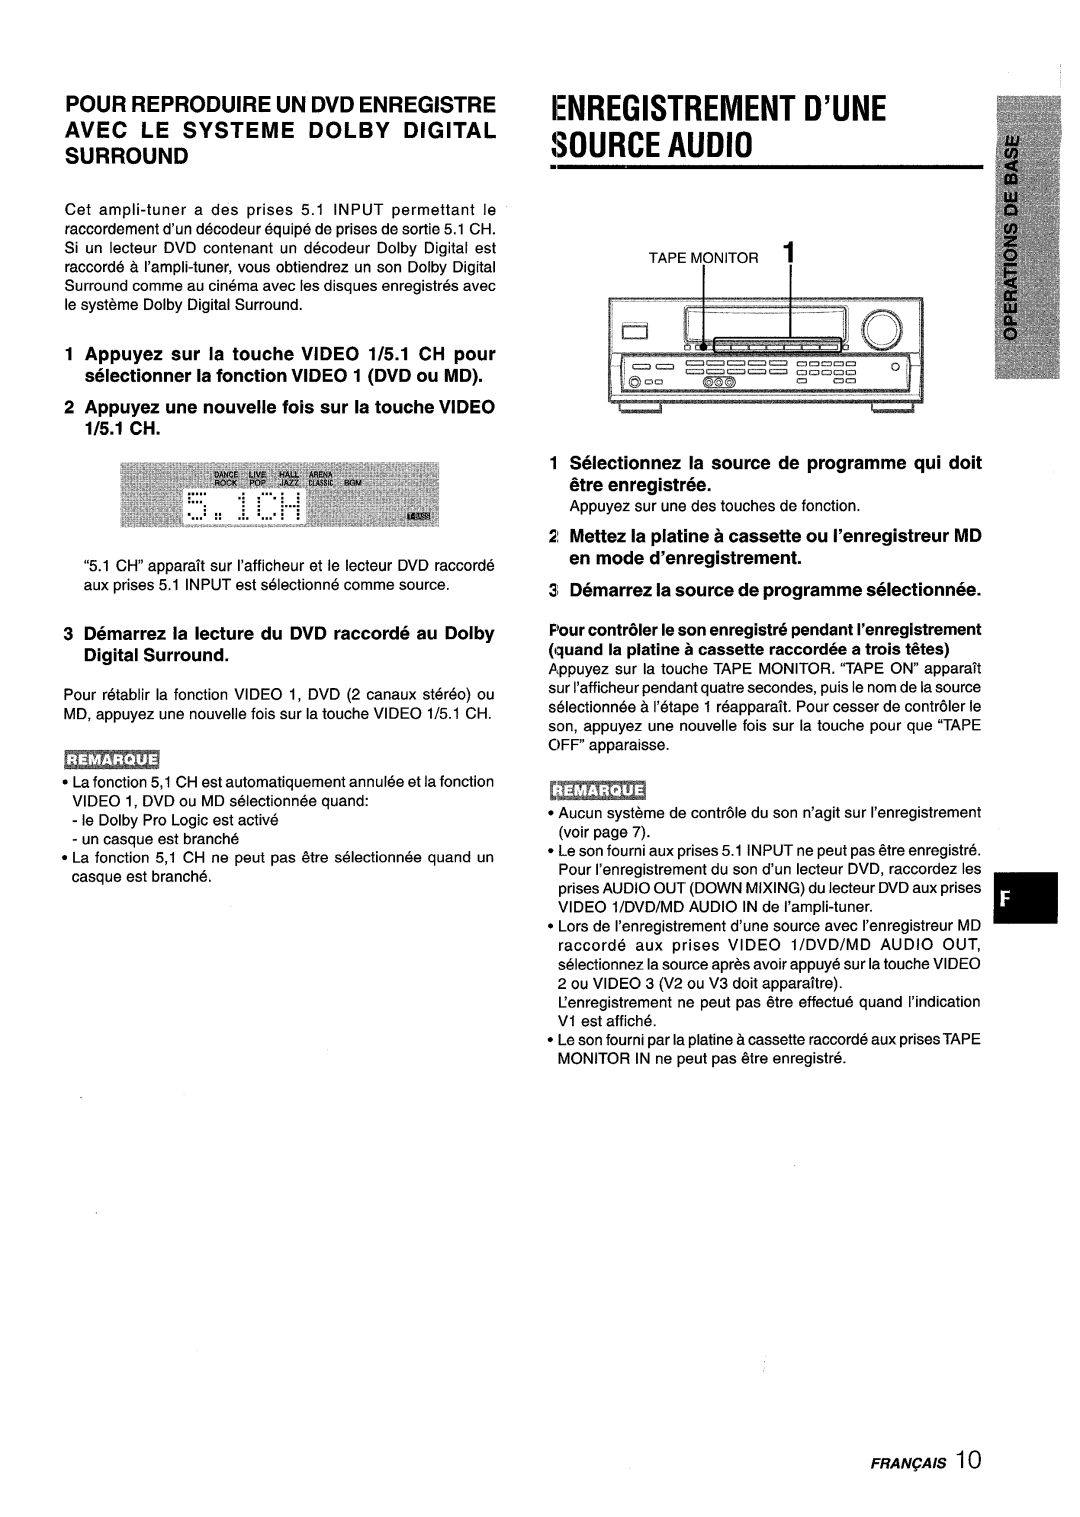 Aiwa AV-D25 manual IENREGISTREMENT D’UNE $OURCE AUDIO m, Pour Reproduire Un Dvd Enregistre, Digital Surround 